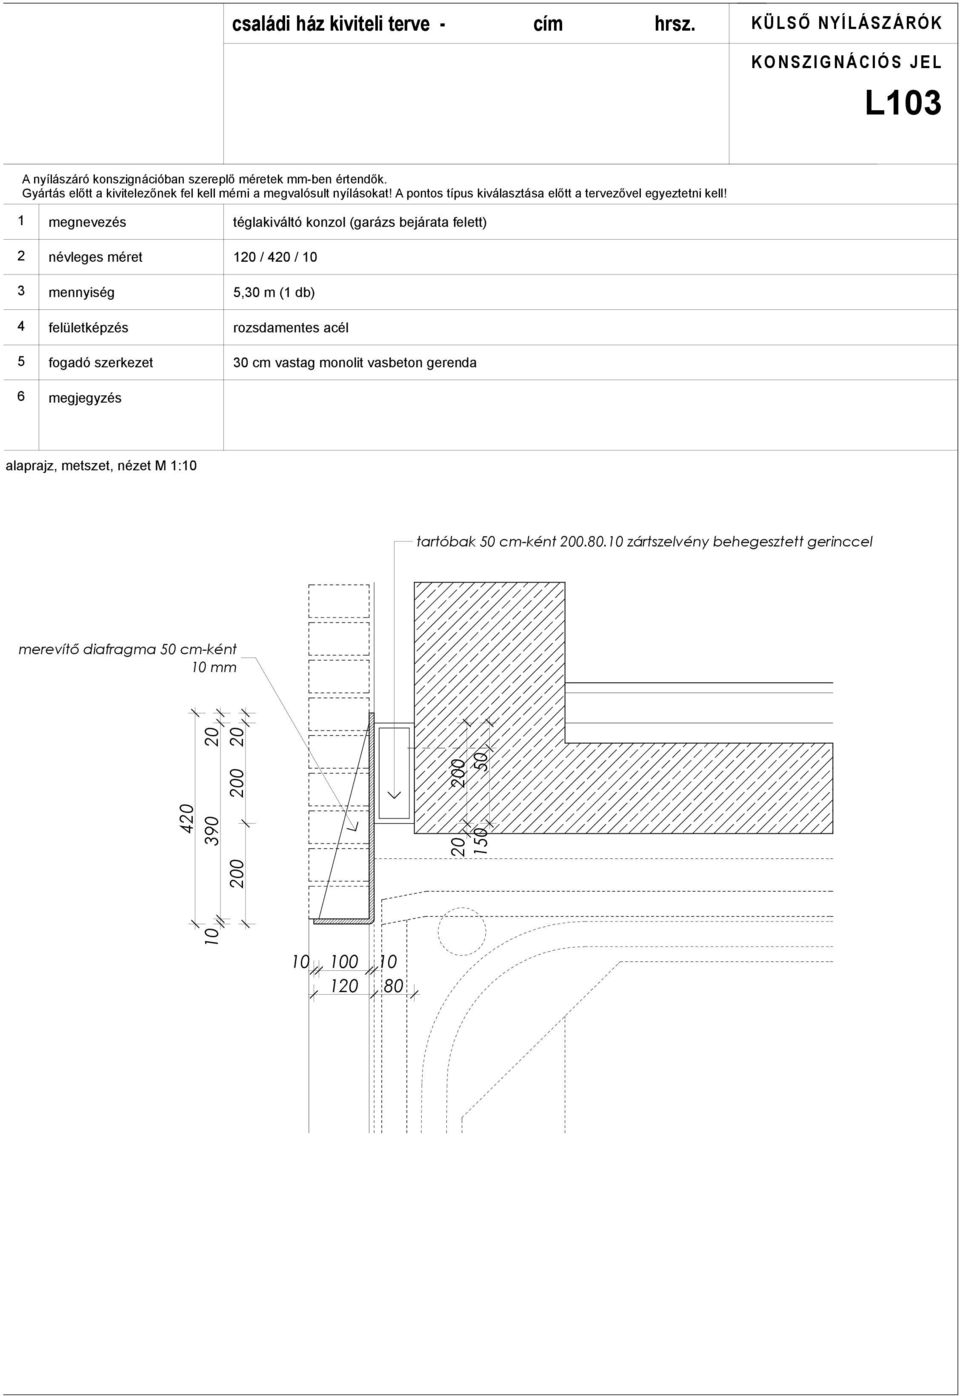 névleges méret mennyiség felületképzés fogadó szerkezet téglakiváltó konzol (garázs bejárata felett) 0 / 0